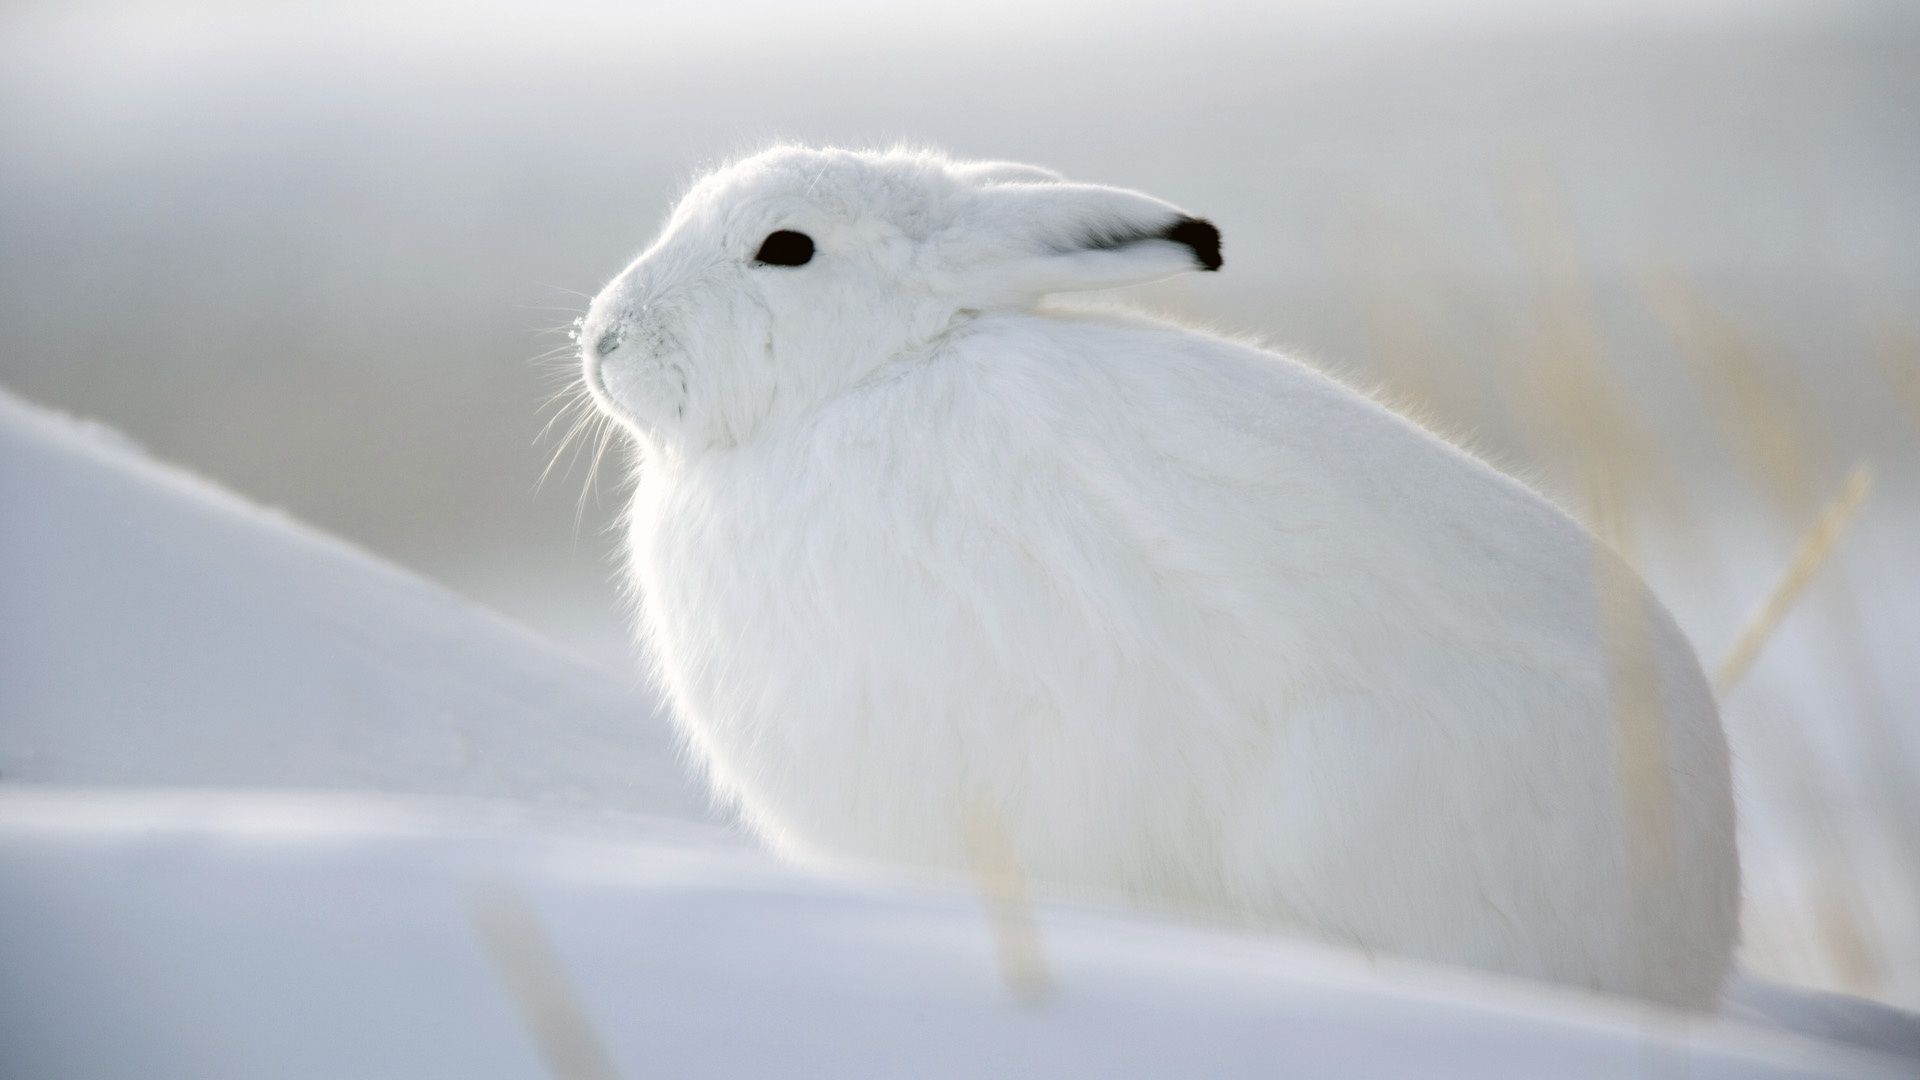 Snow Bunny. 